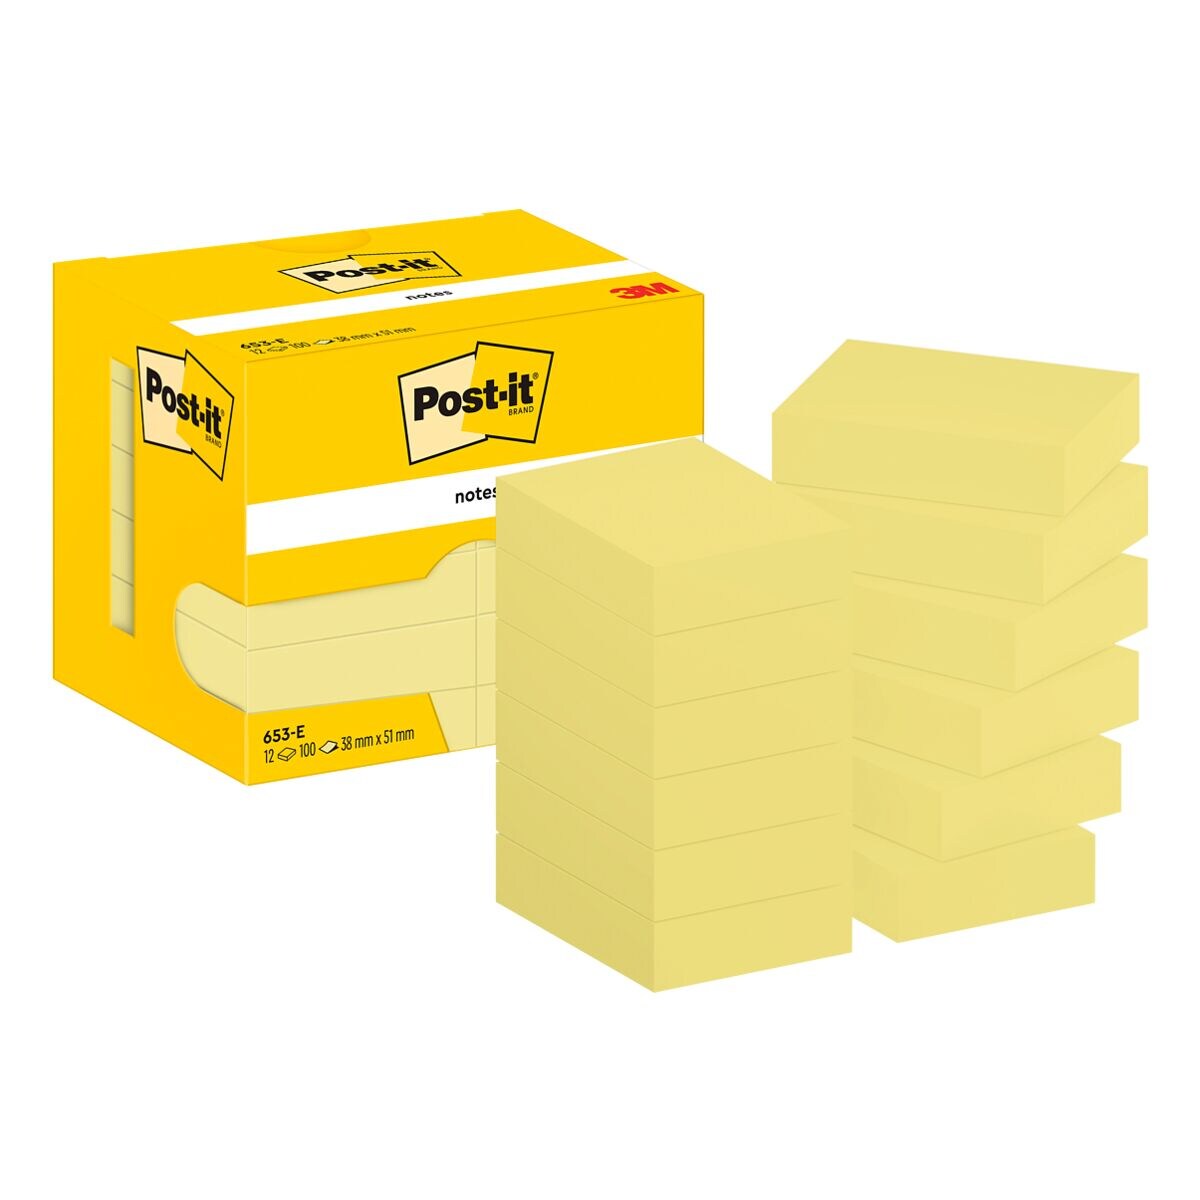 12x Post-it Notes blok herkleefbare notes  Notes 653 5,1 x 3,8 cm, 1200 bladen (totaal), geel